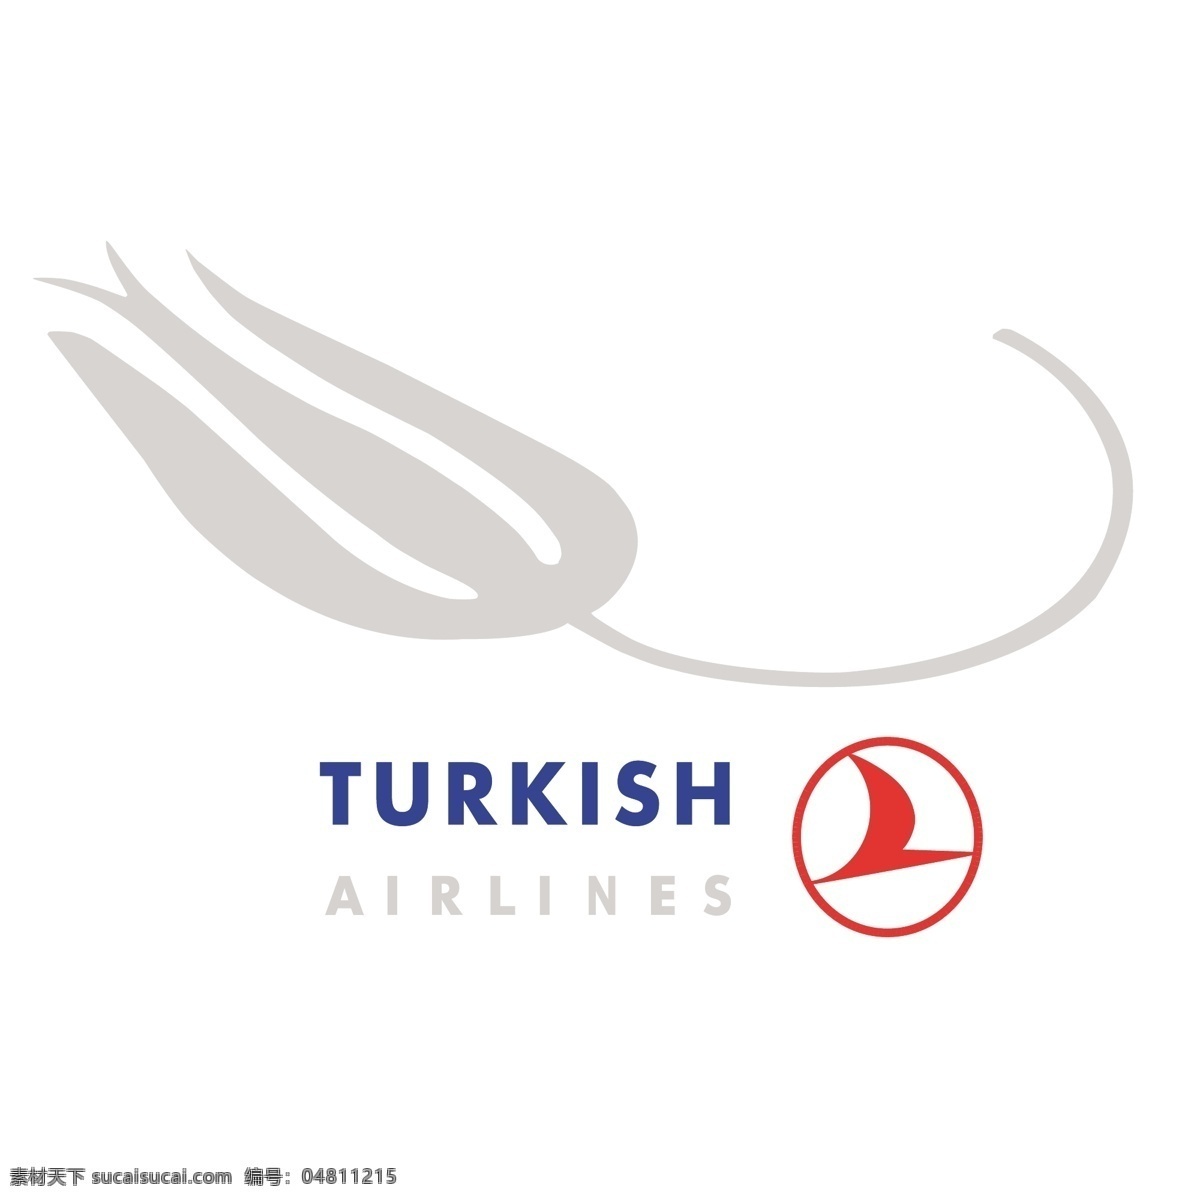 土耳其 航空公司 2005 标志 免费 psd源文件 logo设计